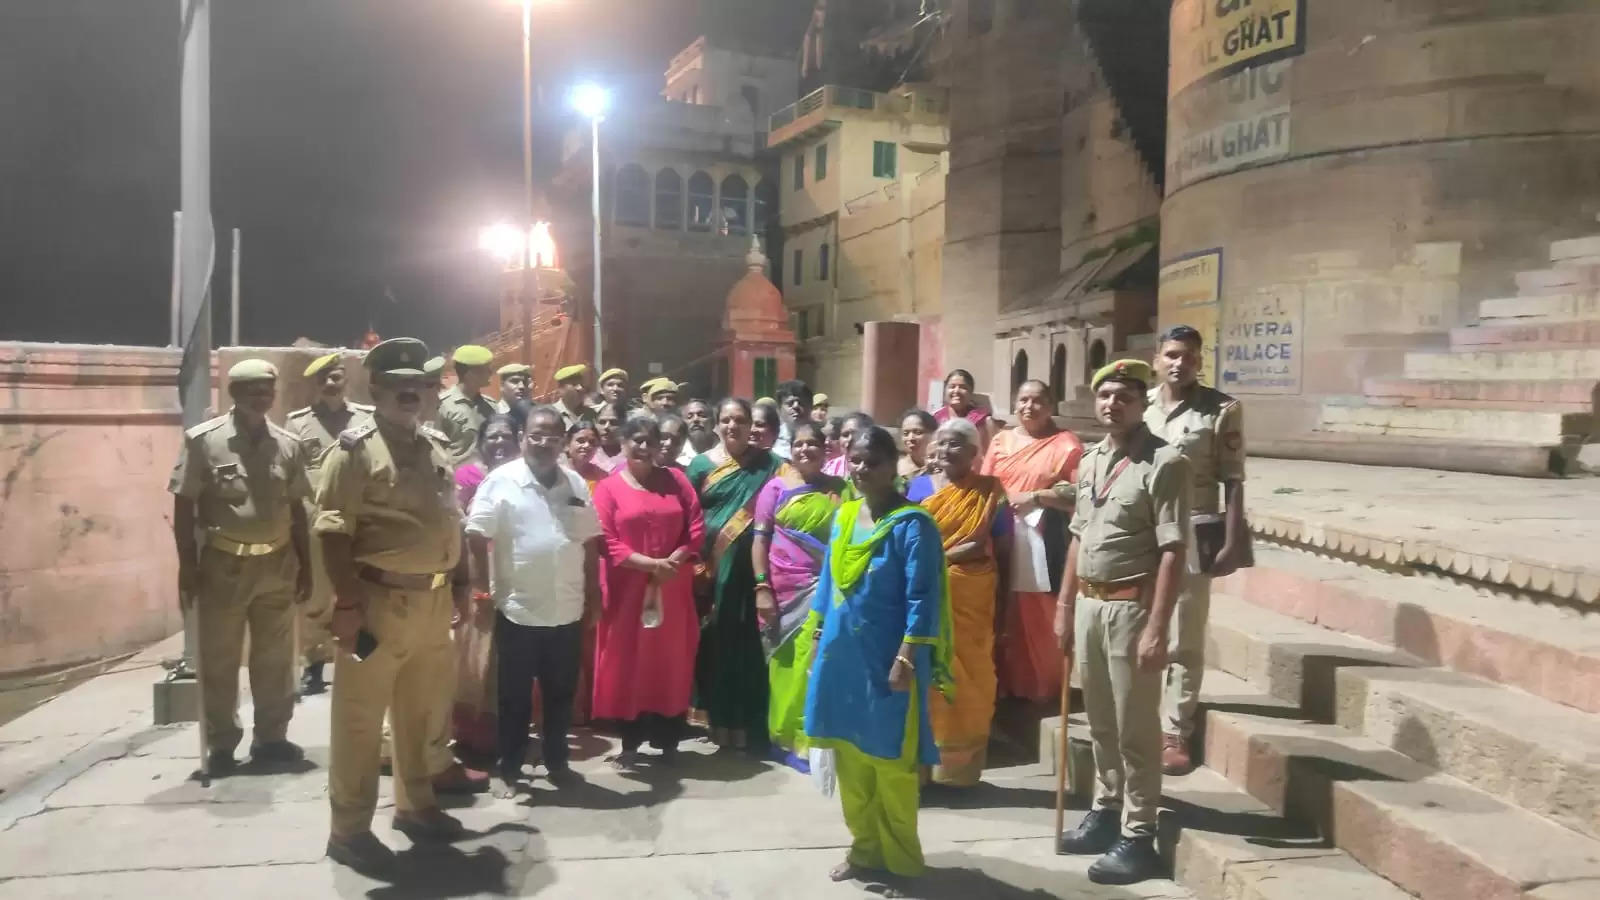 काशी के घाट पर भटक गया था बेंगलुरू के तीर्थयात्रियों का दल, पुलिस ने होटल तक पहुचवाया